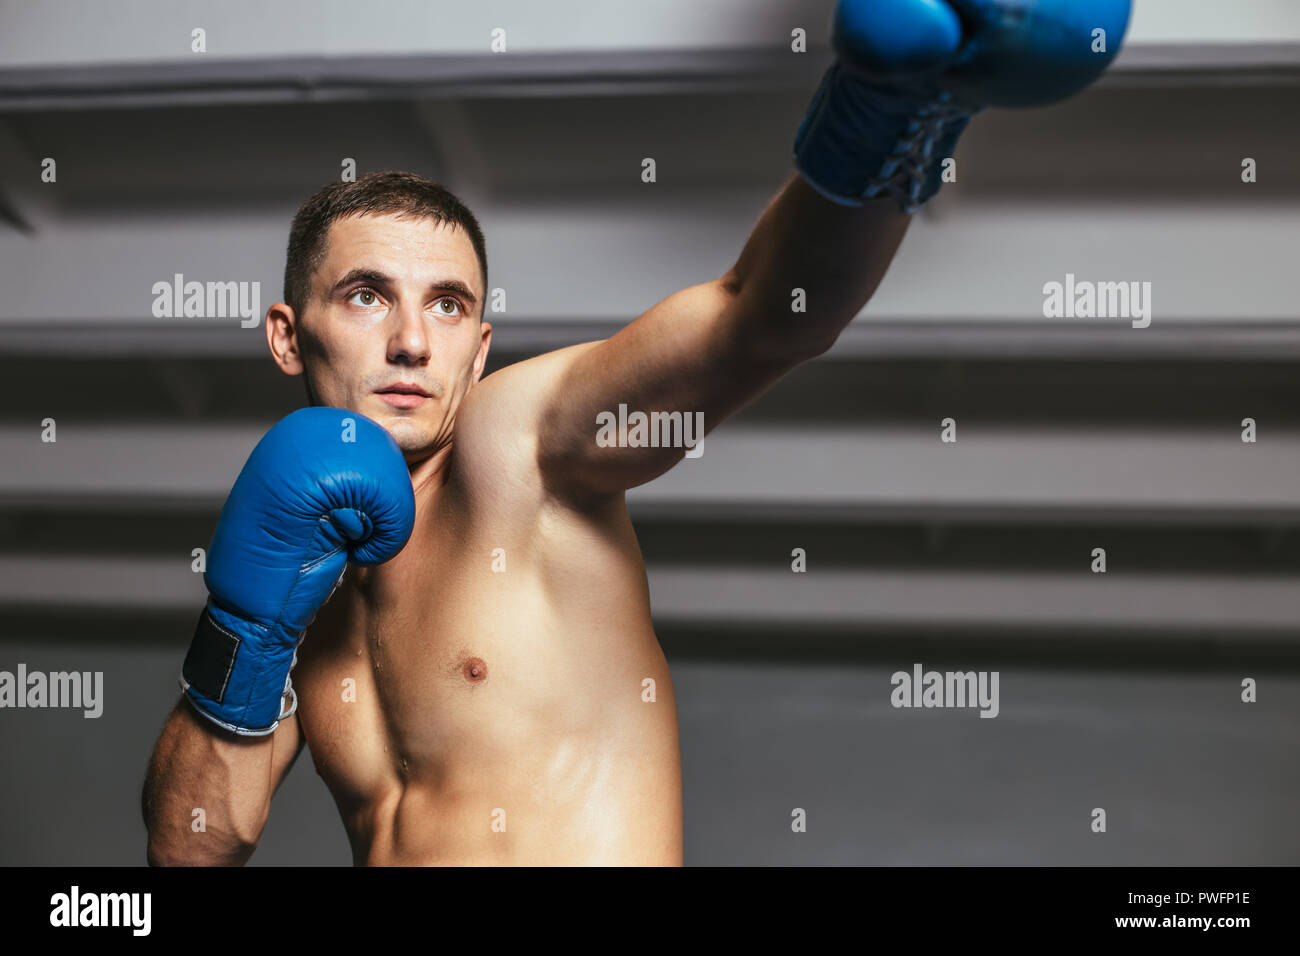 Männliche Boxer beim Boxen Übung direkt betroffen. Sport Konzept jab  Stockfotografie - Alamy